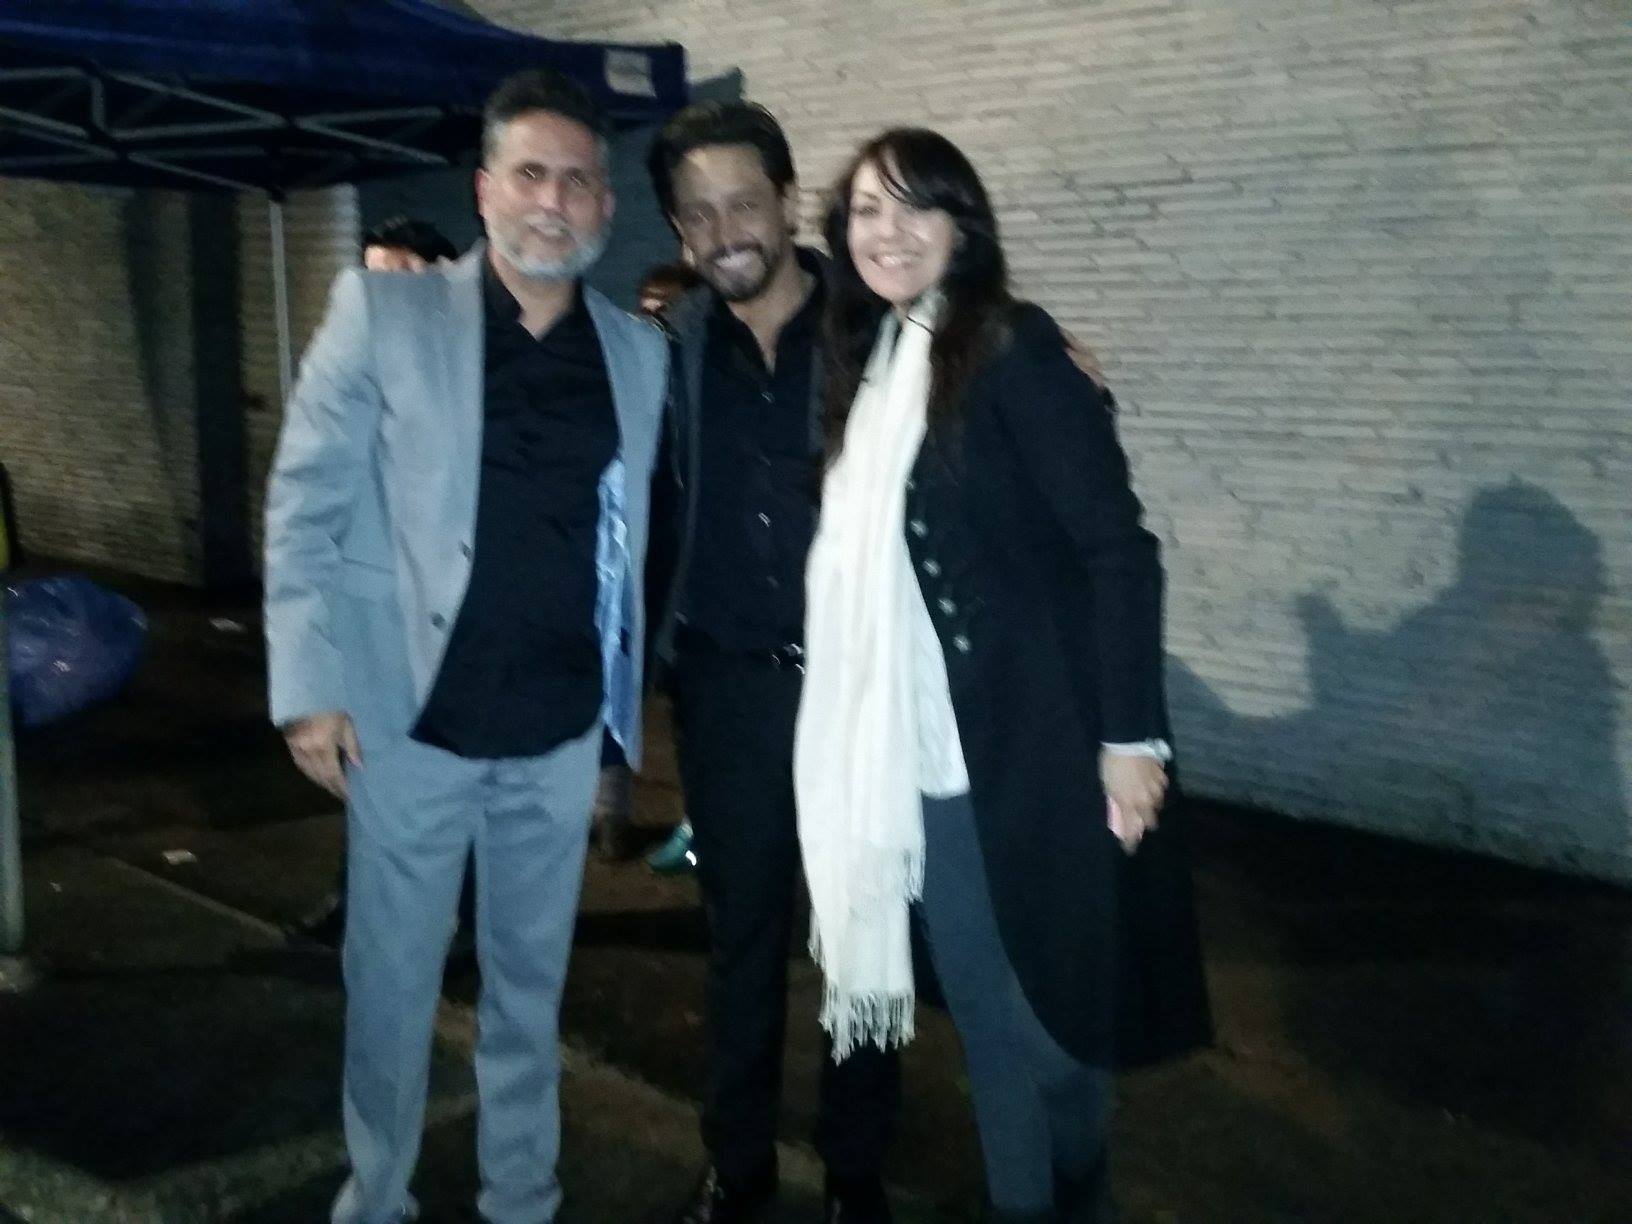 Marlon Moreno, David Villada and Carolina Gomez co-stars on Bandolero directed by Simon Brand